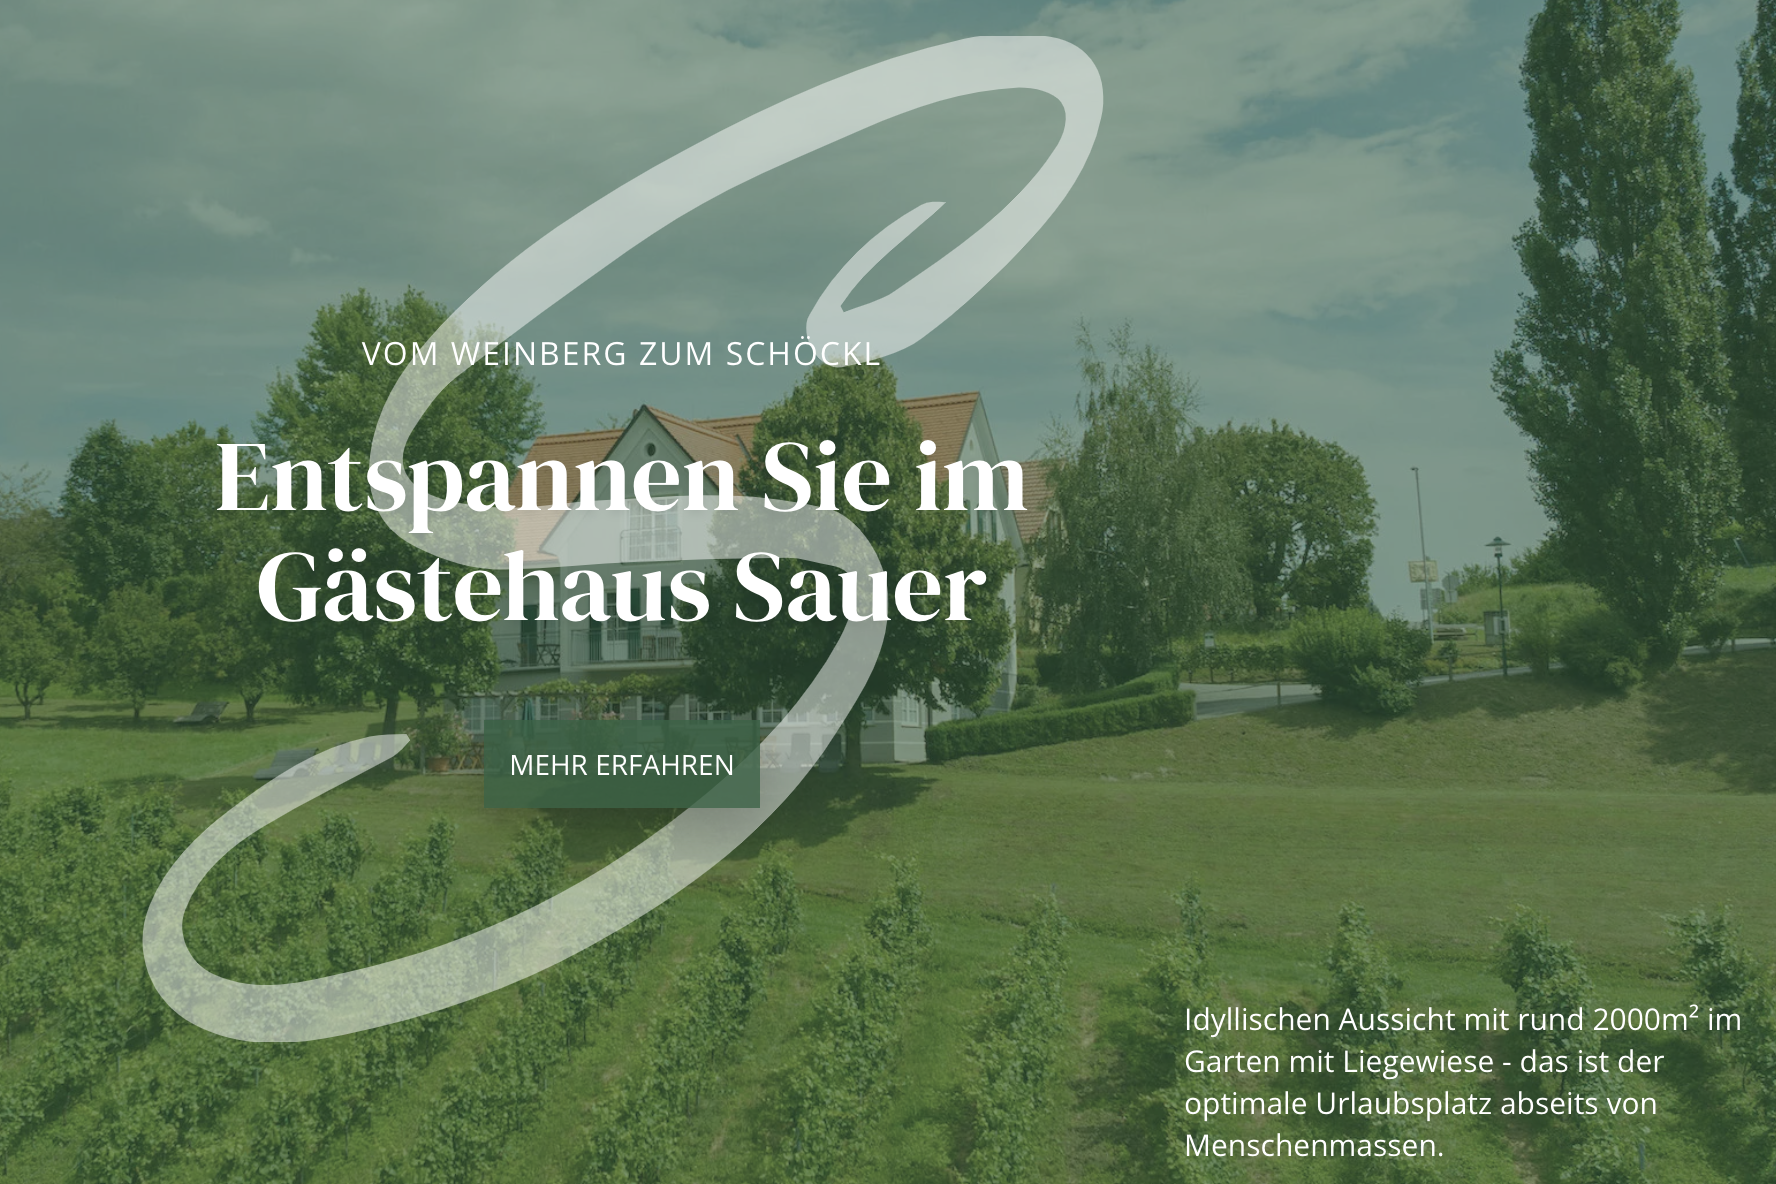 Nieuwe website – Welkom bij het gasten- en vitaliteitshuis Sauer in Kitzeck!